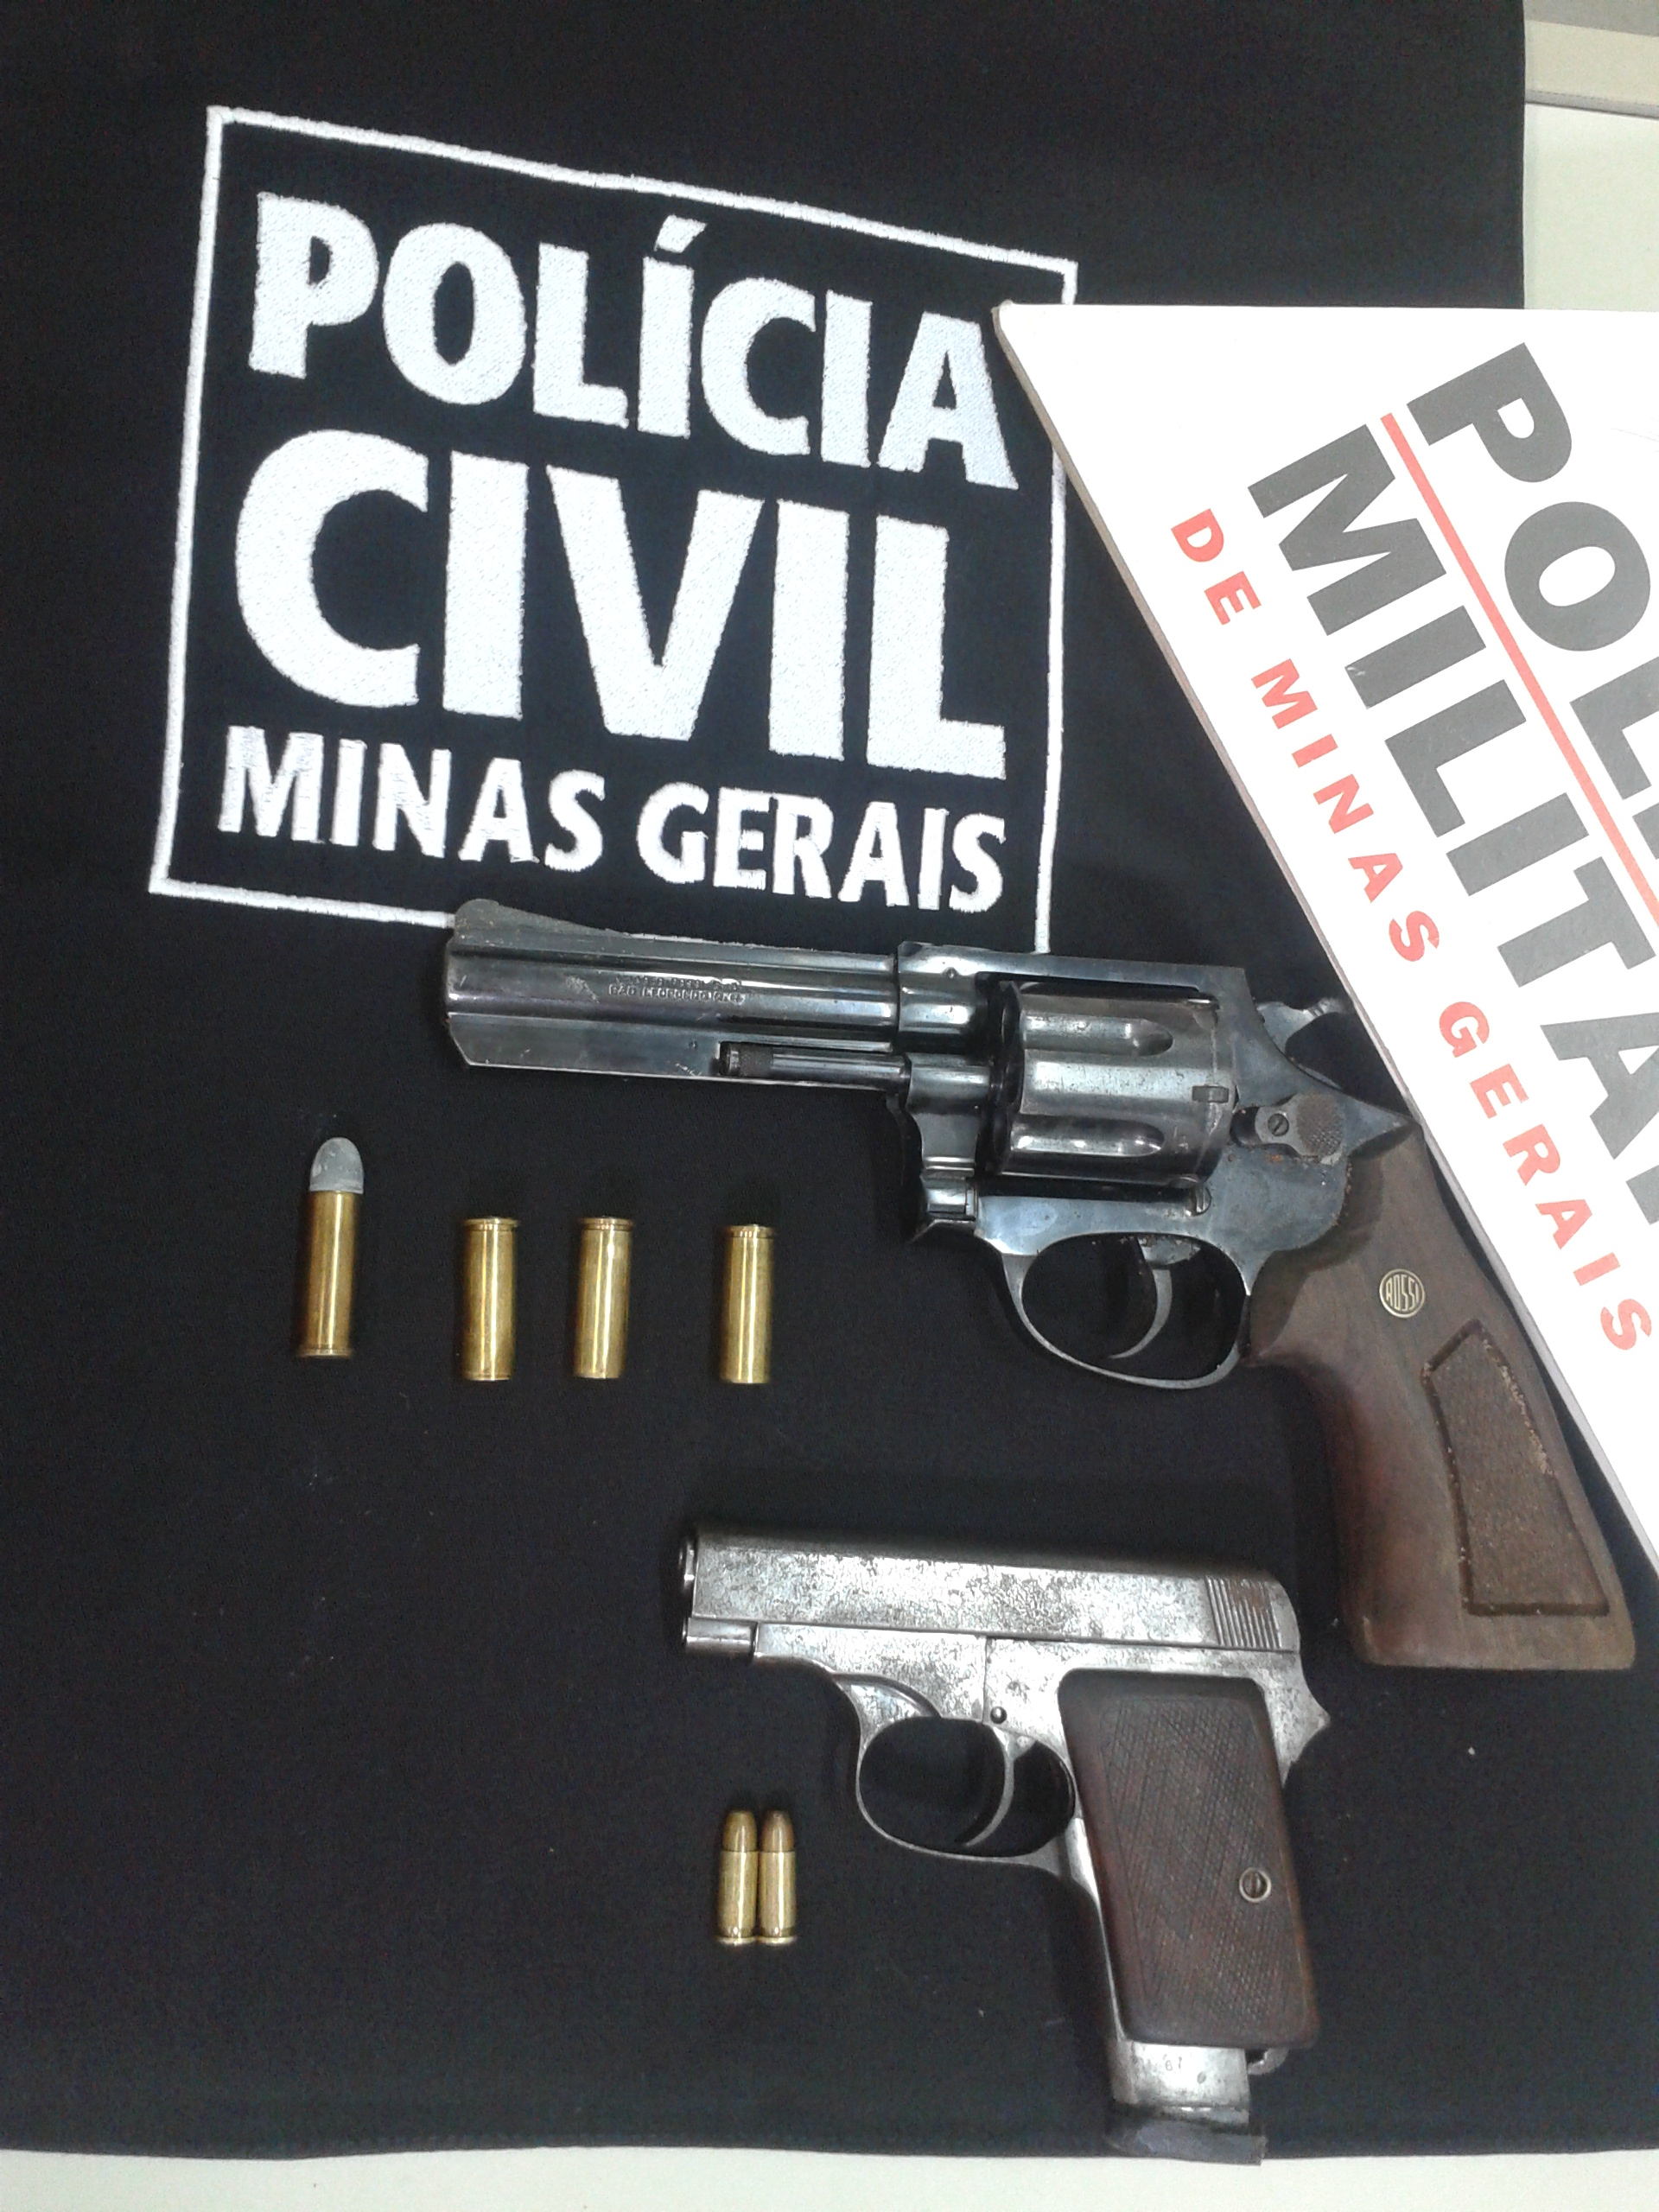 O Taurus usado no crime e a pistola Beretta apreendida com Tiago Martins.